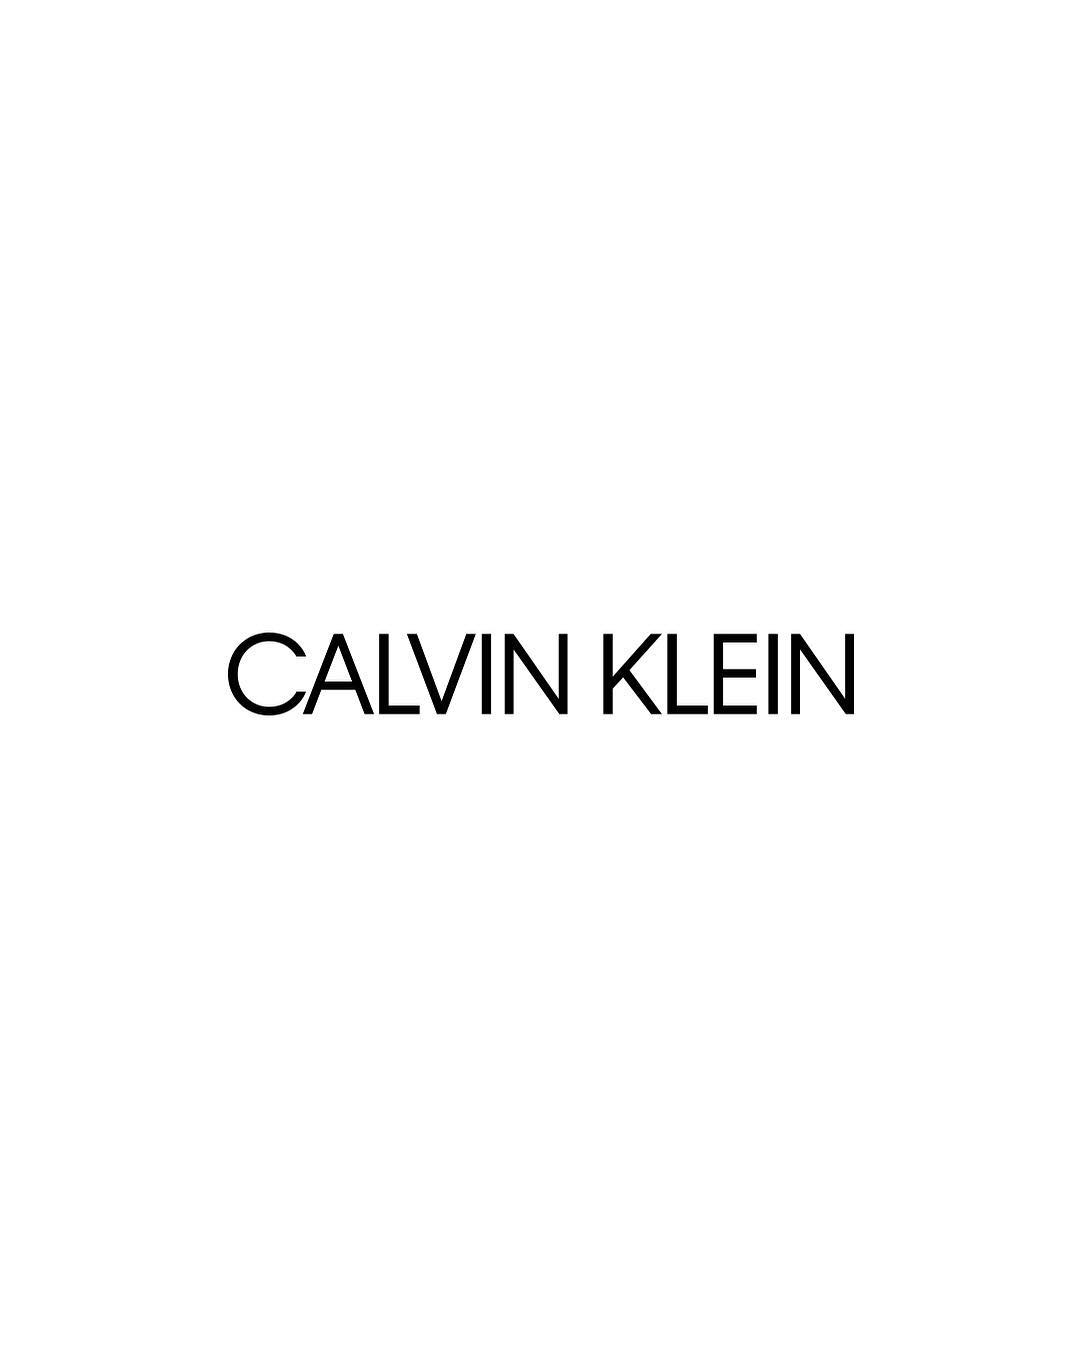 Logo Baru Calvin Klein